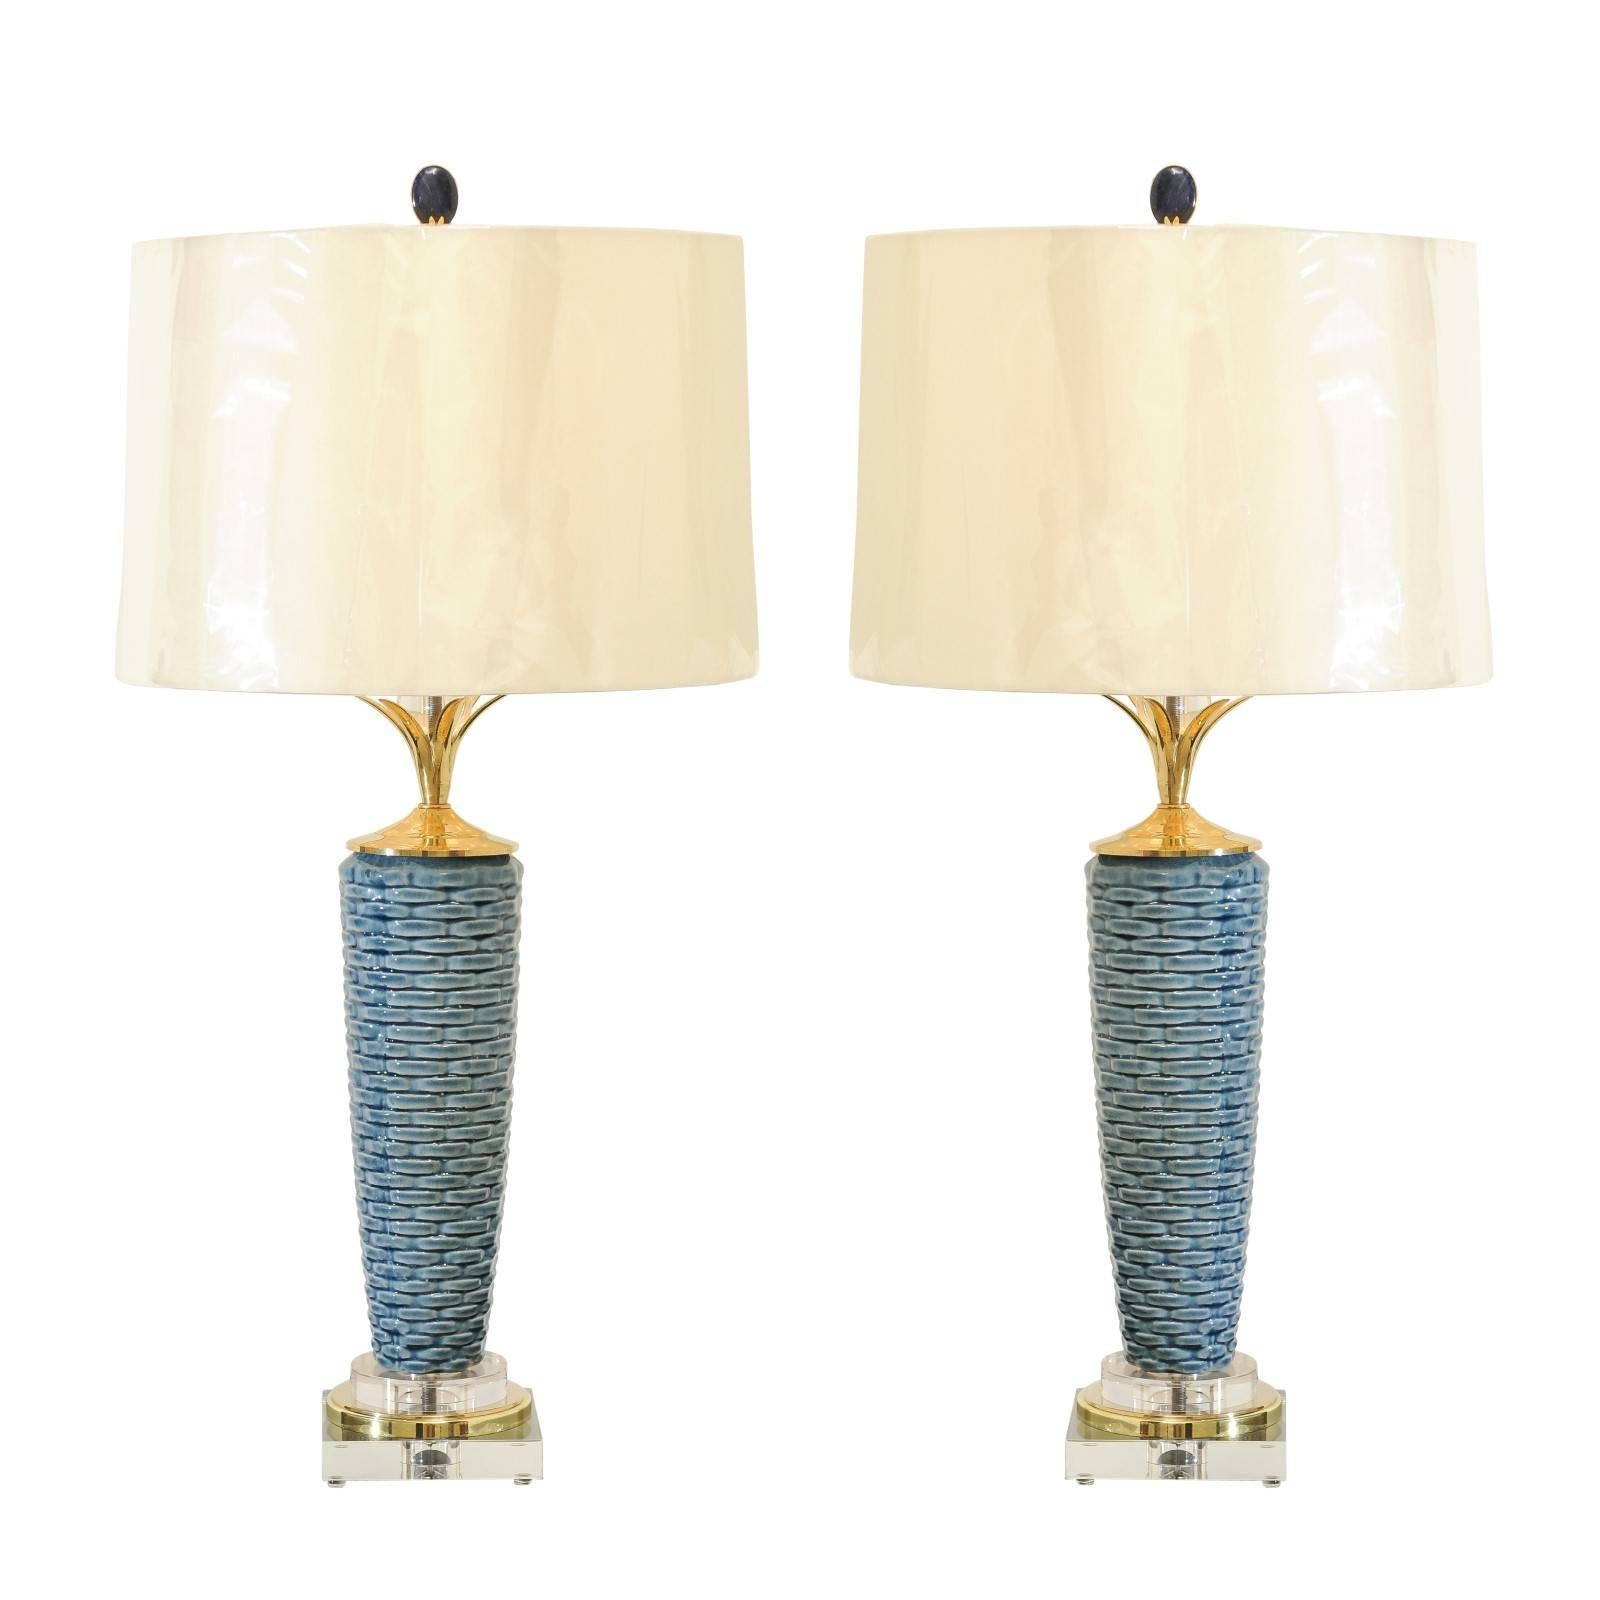 Exquise paire de vases portugais en céramique tissée en forme de panier servant de lampes sur mesure